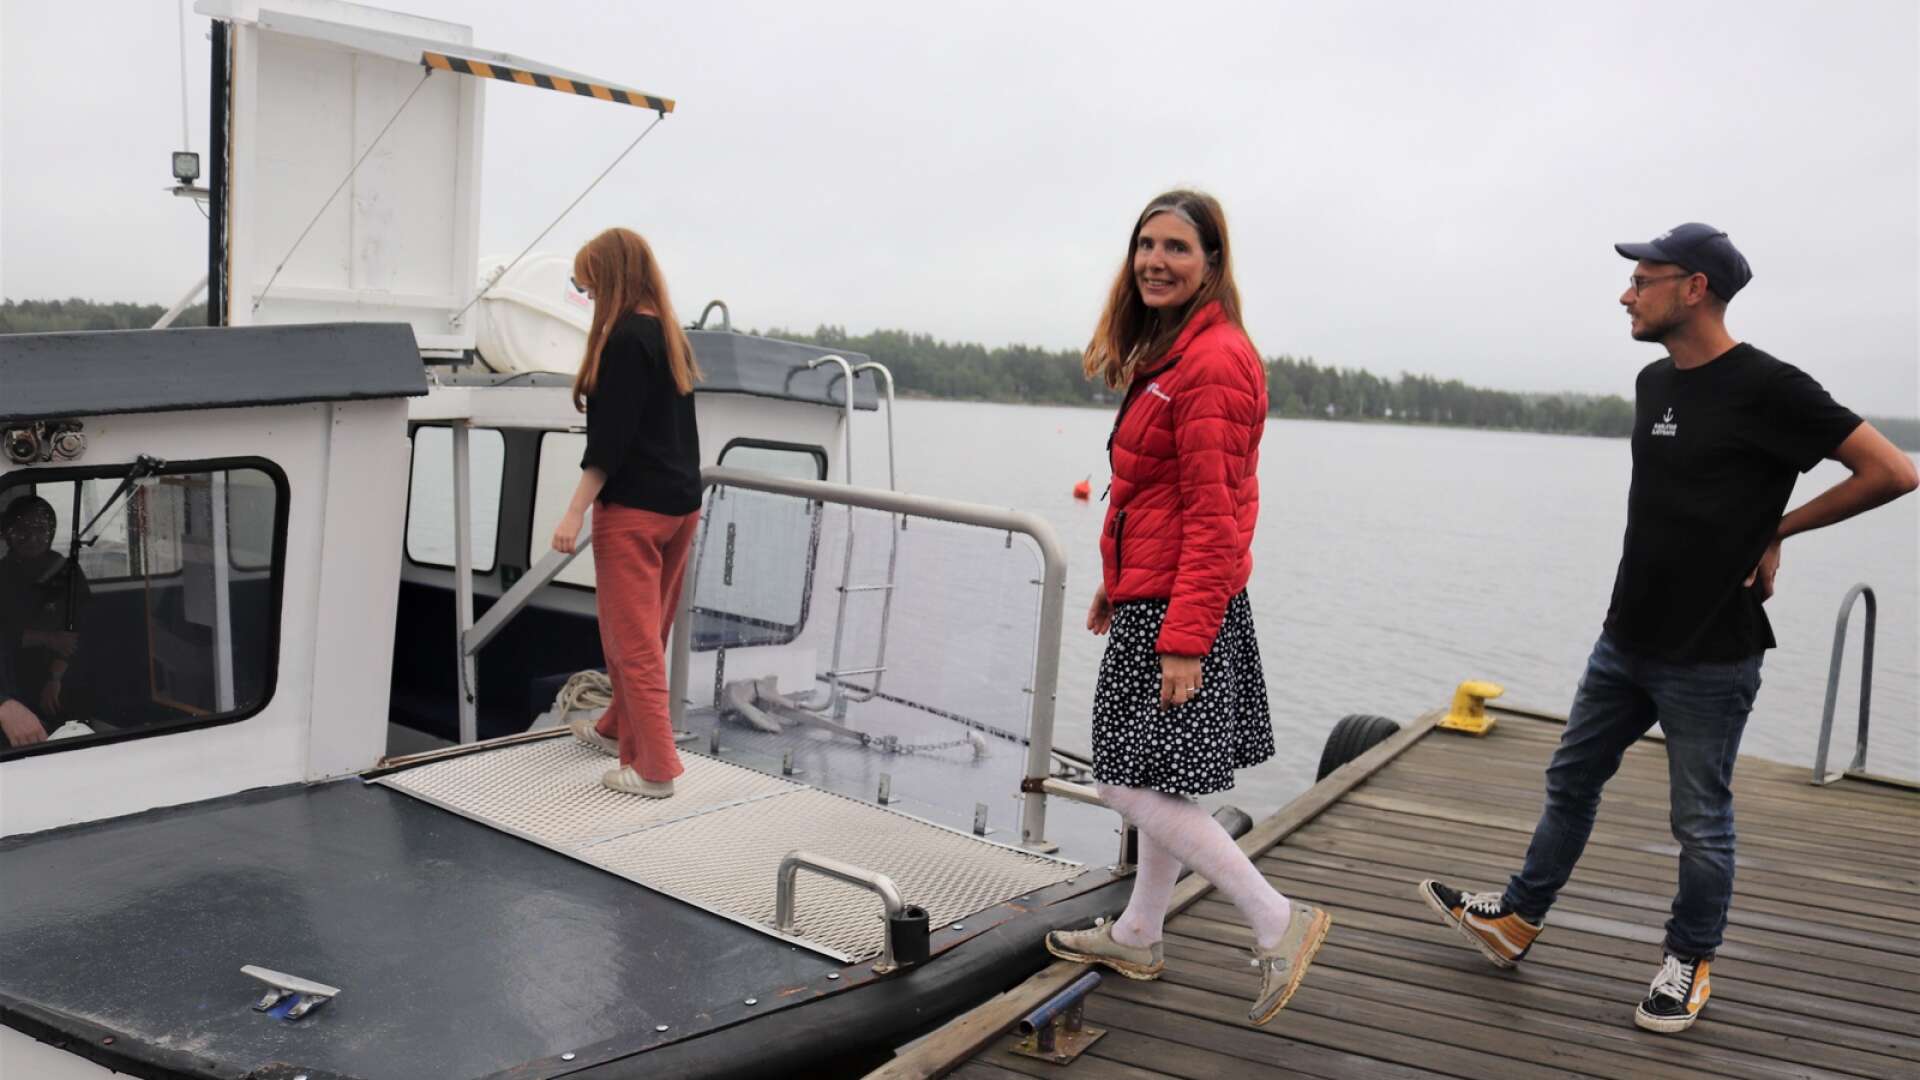 Det var inget fantastiskt väder på premiärdagen, men i år kan vädret bli betydligt sämre utan att turerna ställs in. Frida Persson och Linnéa Palmqvist, turism- och destinationsutvecklare, och Dan Hedegren, vd för Karlstad sjötrafik, kliver på båtbuss 95.